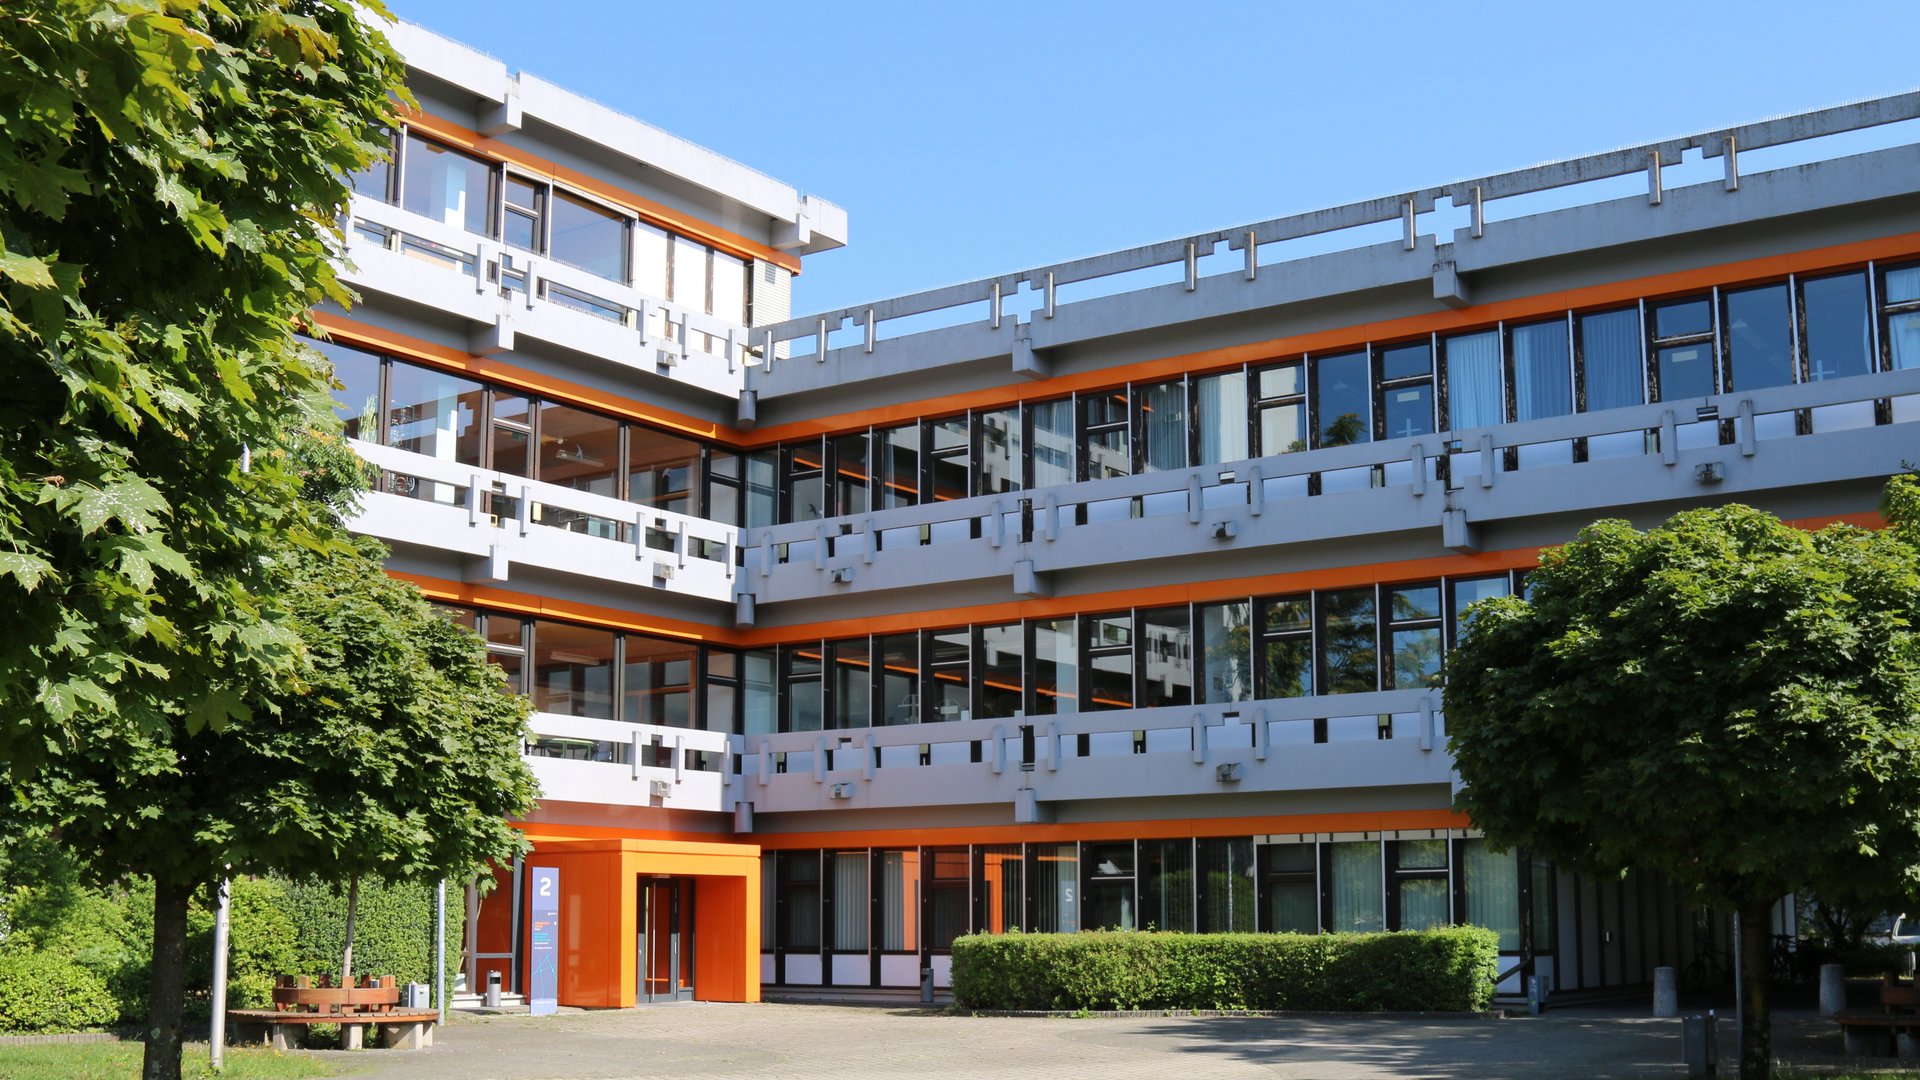 Dreistöckiges Gebäude mit orangener Fassade und Grünfläche im Sommer